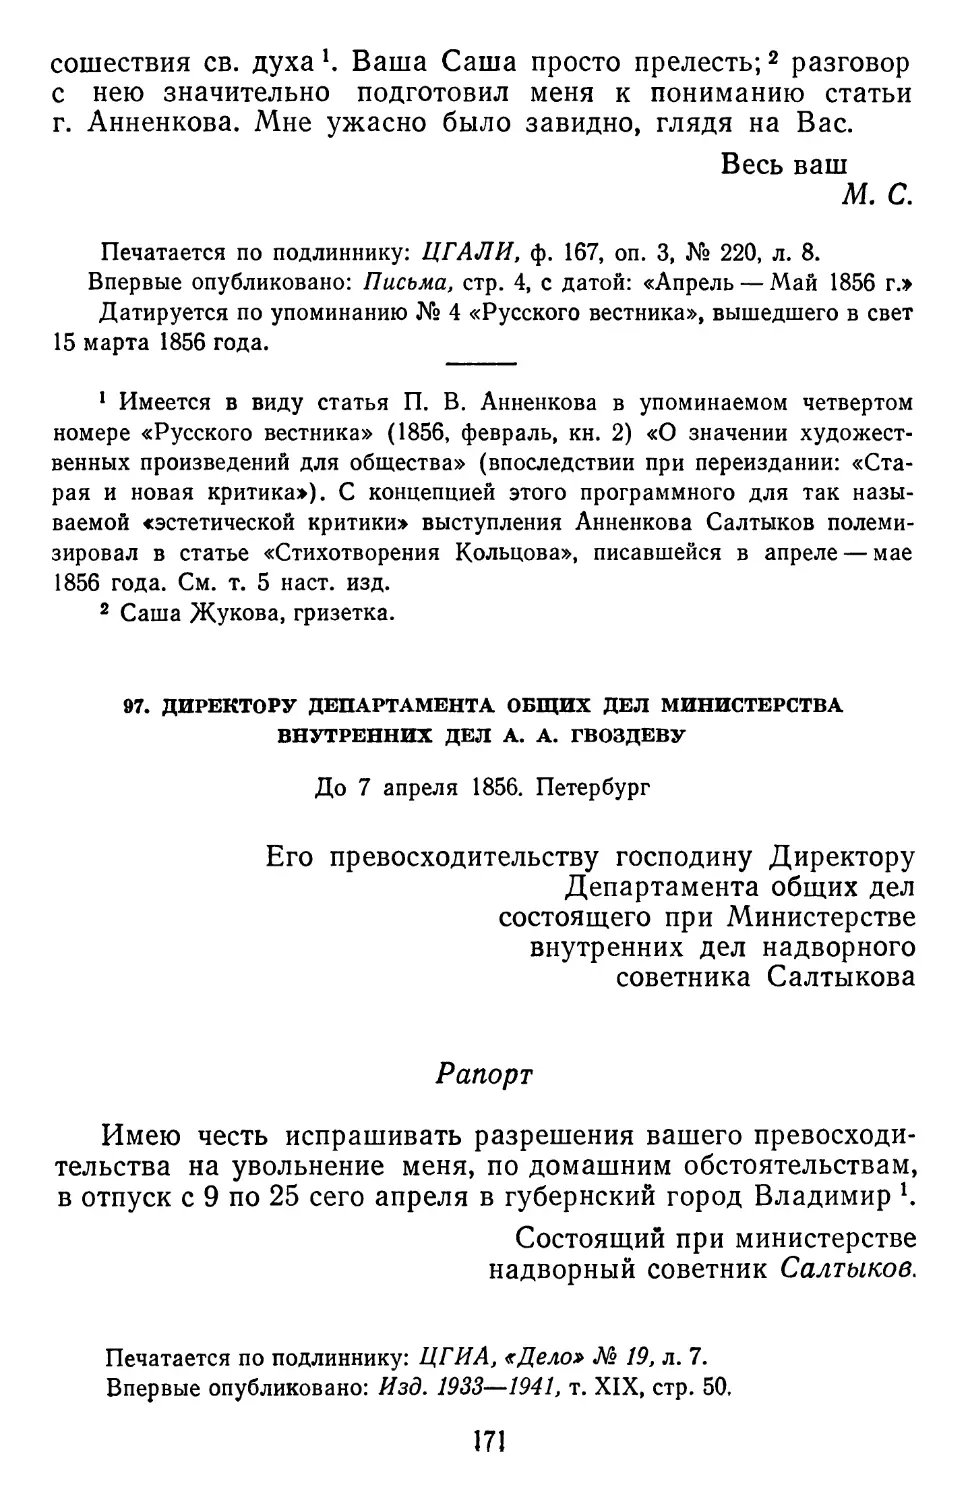 97.А.А. Гвоздеву. До 7 апреля 1856. Петербург